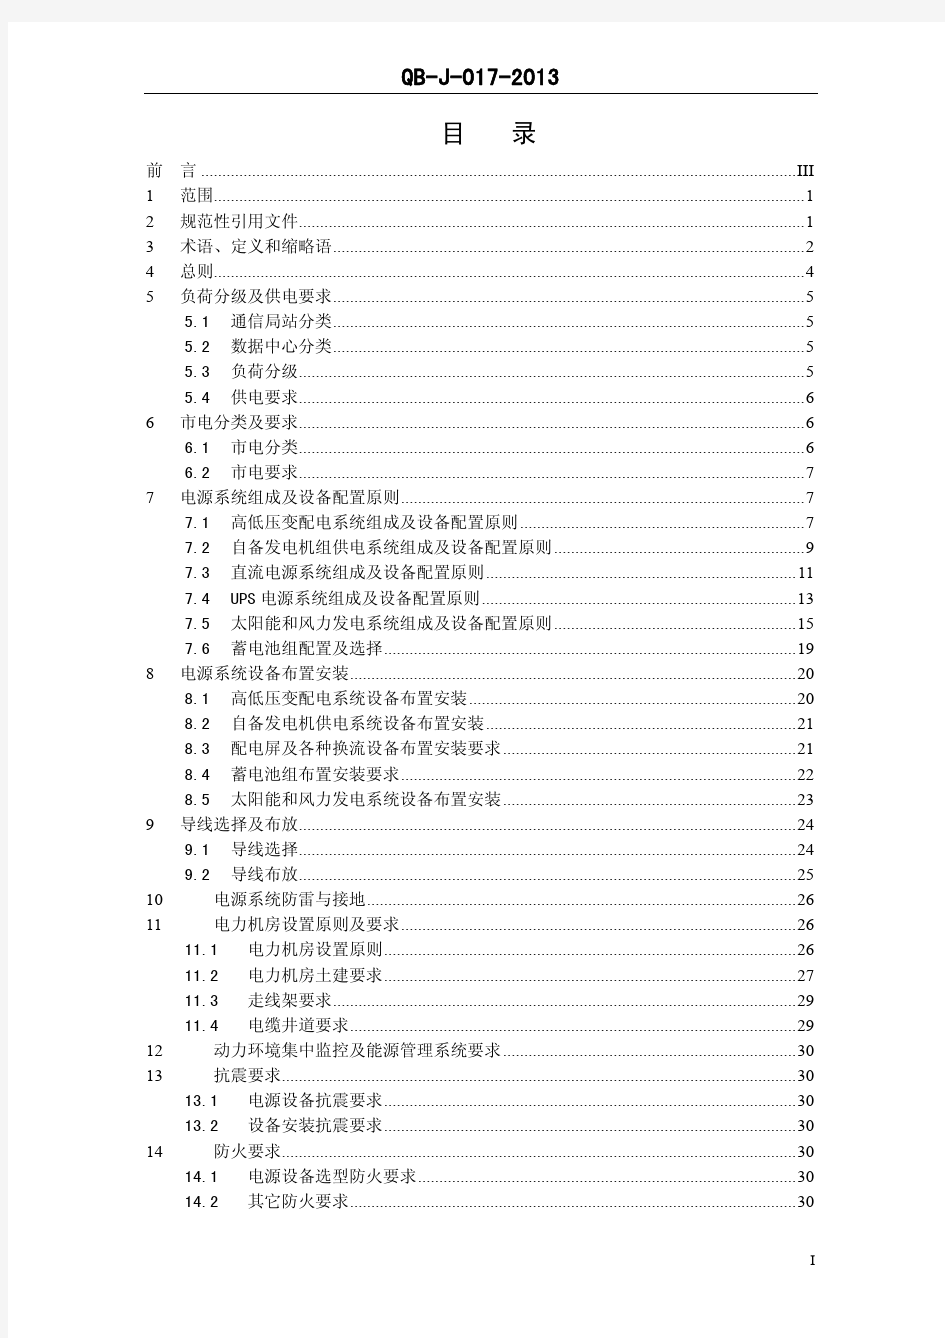 《中国移动 通信电源系统 工程设计规范 》(QB-J -017-2013)V1  0 0-修正版